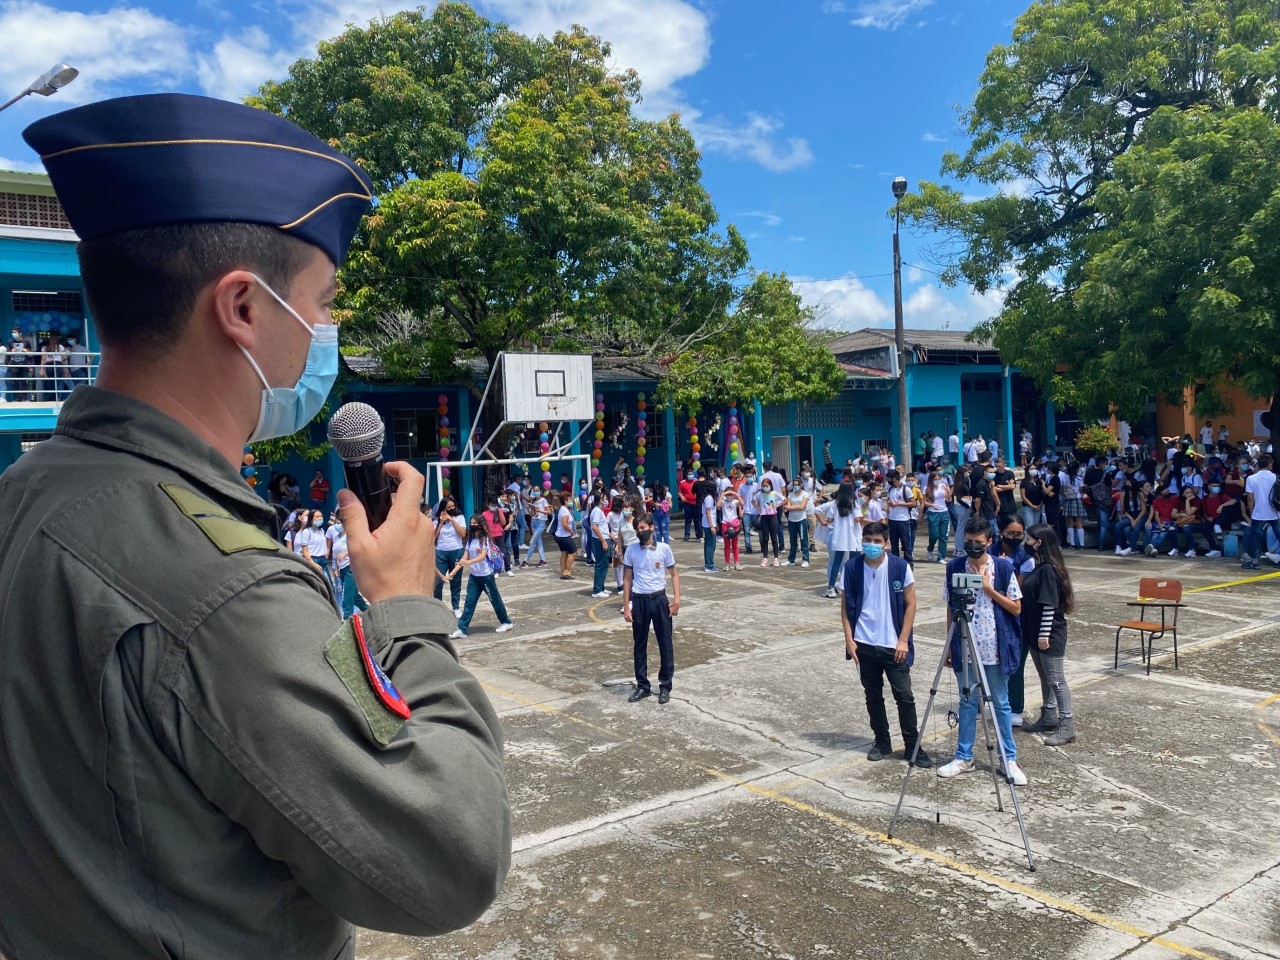 Con charlas didácticas su Fuerza Aérea Colombiana participó en Feria de la Ciencia en la Dorada Caldas 